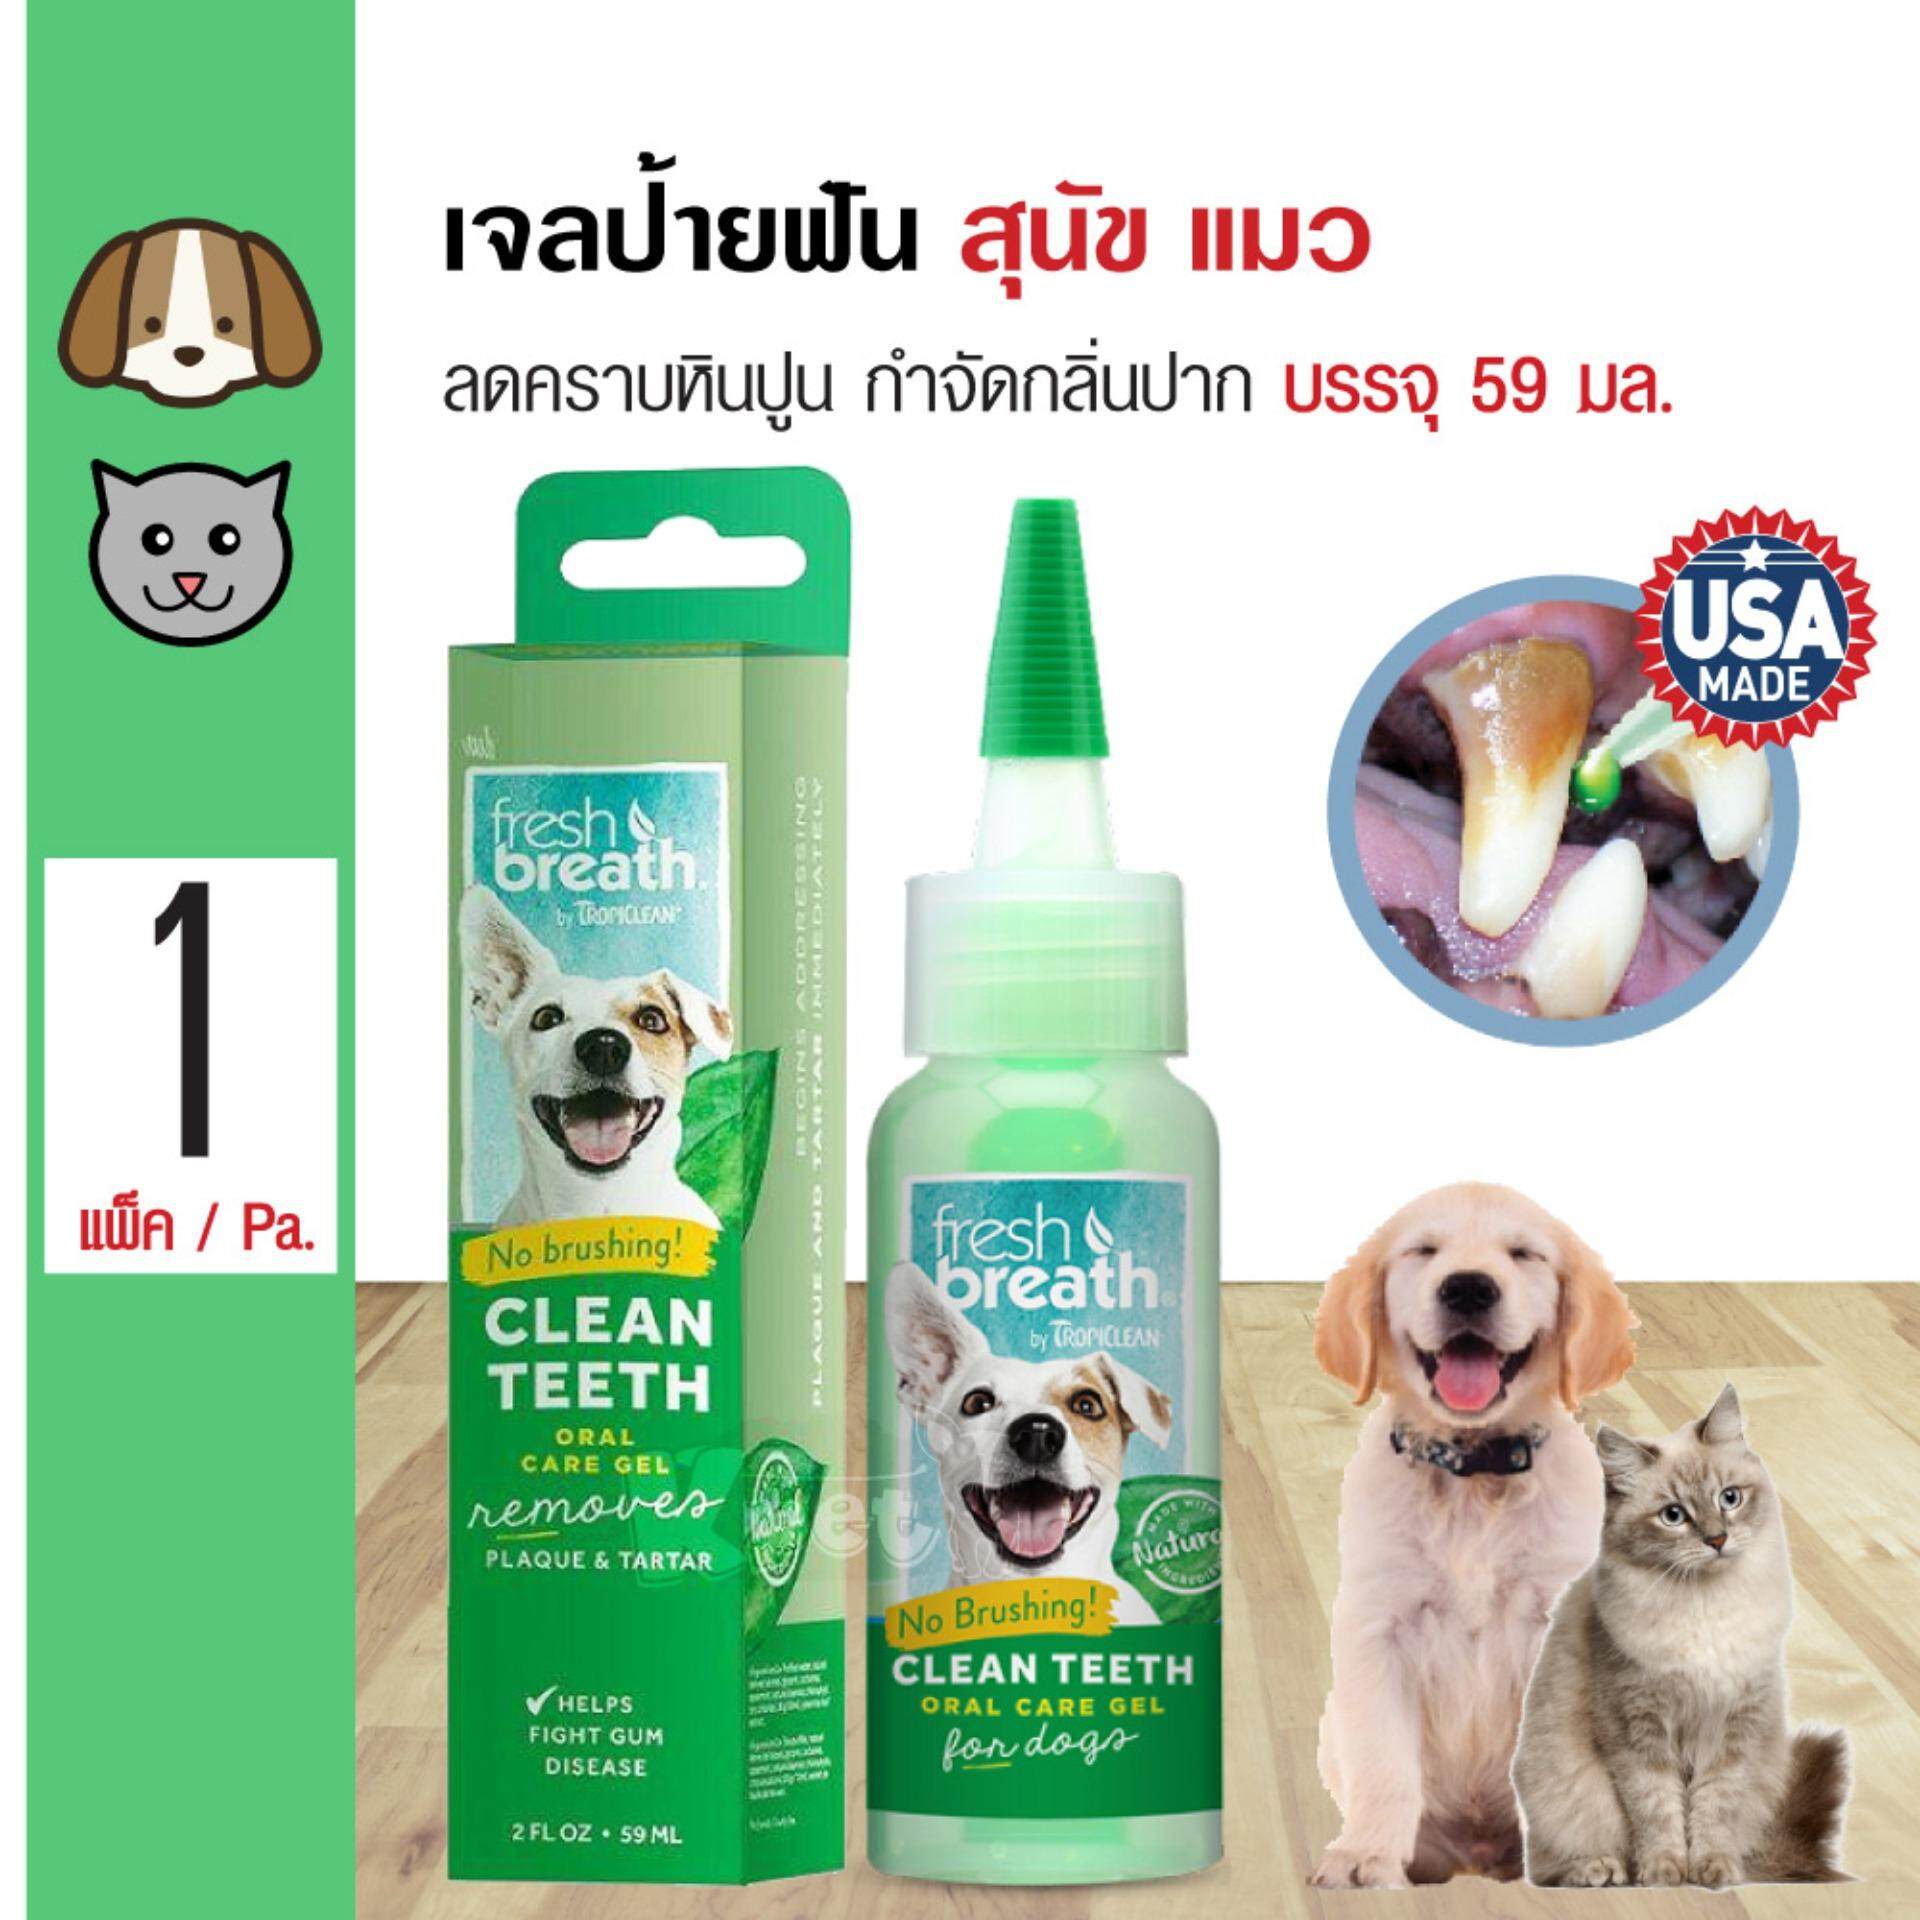 Tropiclean Fresh Breath เจลป้ายฟันสุนัข สูตรดั้งเดิม ลดคราบหินปูน ลดกลิ่นปาก สำหรับสุนัขและแมว (59 มล./ขวด)